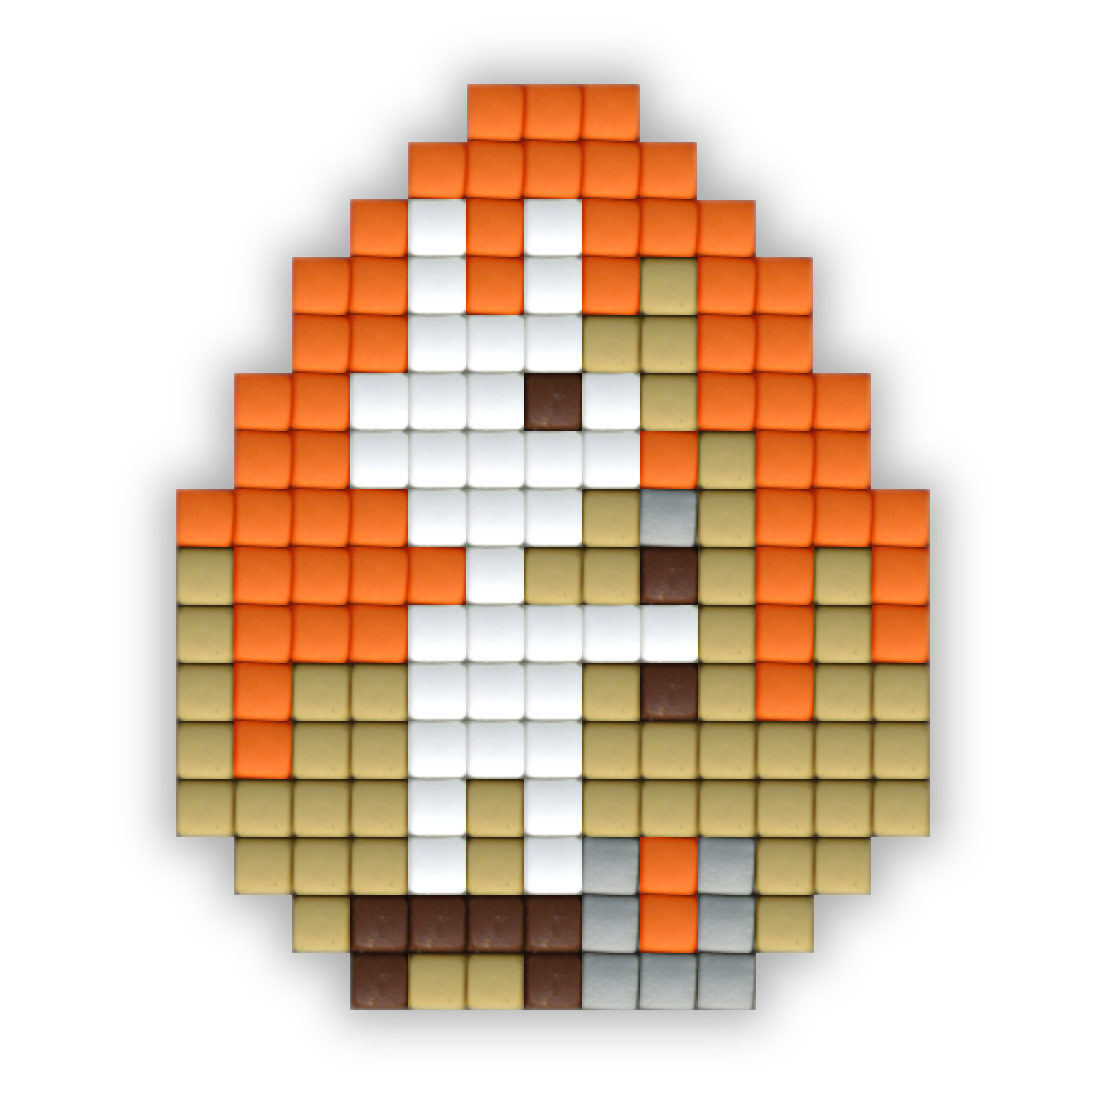 Pixel hobby easter egg craft kit